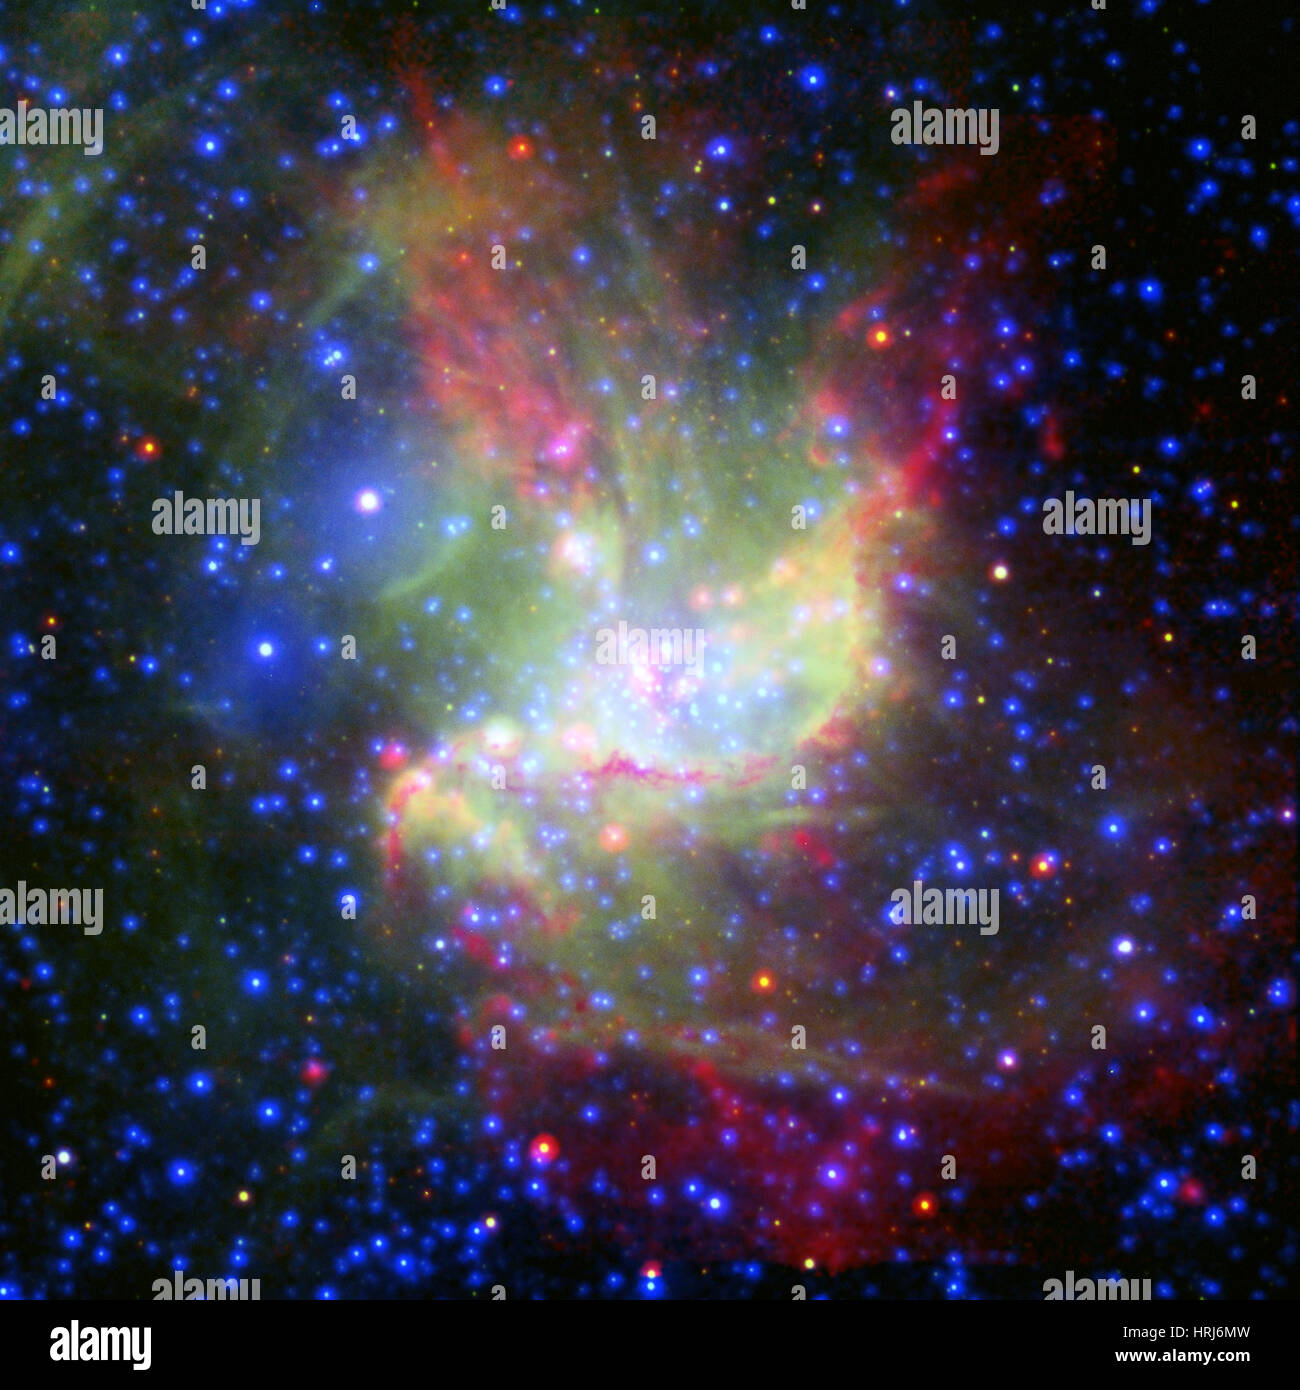 Amas d'étoiles ouvert NGC 346, SMC Banque D'Images